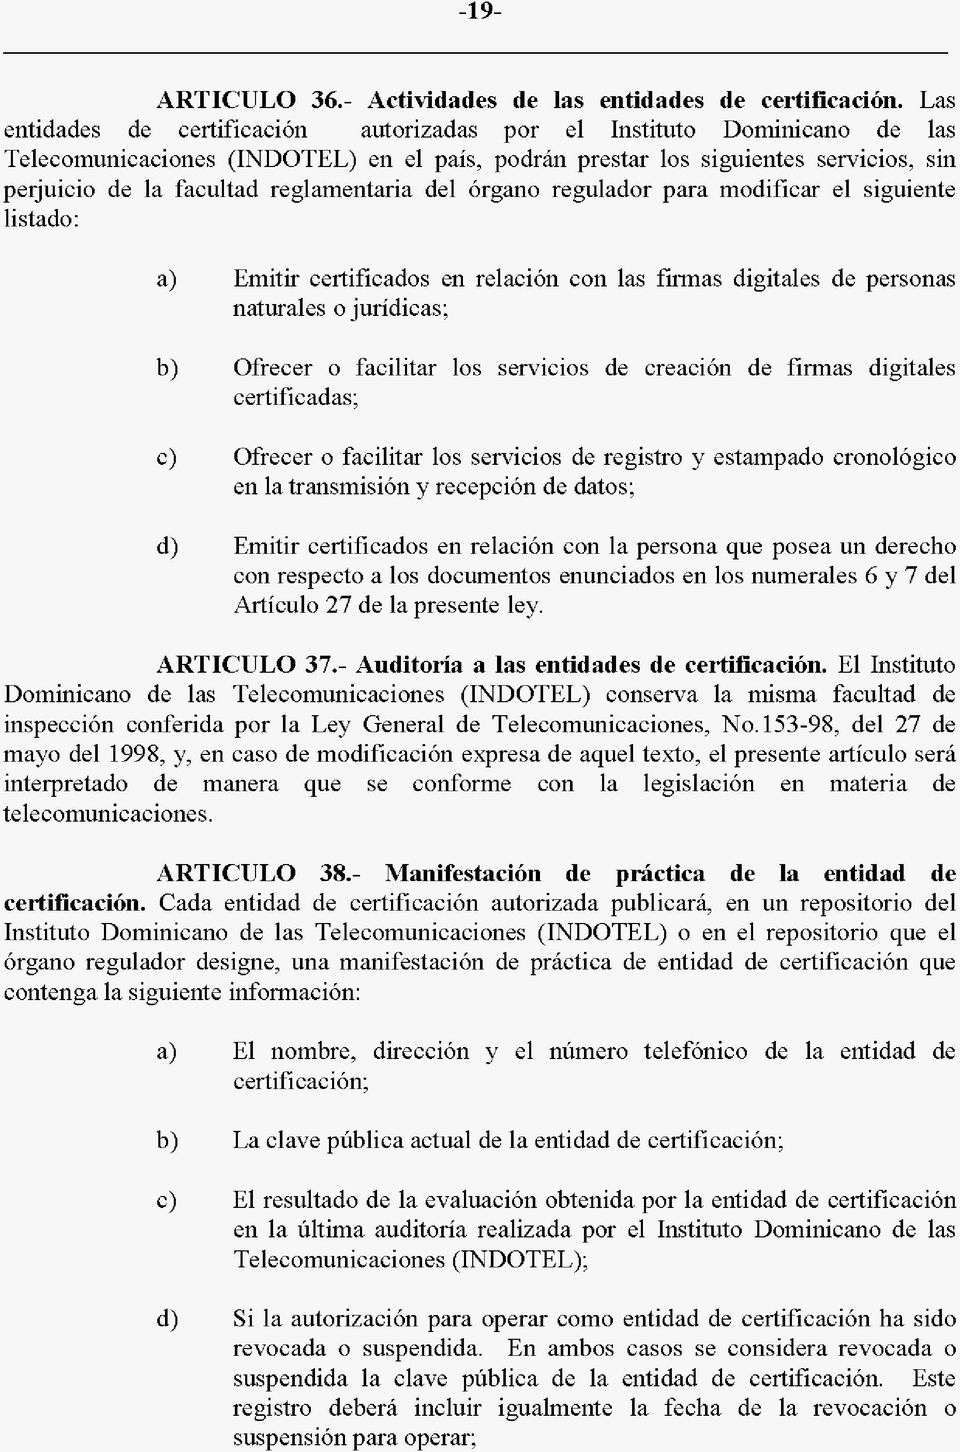 reglamentaria del hrgano regulador para modificar el siguiente listado: a) Emitir certificados en relacihn con las firmas digitales de personas naturales o juridicas; b) Ofrecer o facilitar 10s